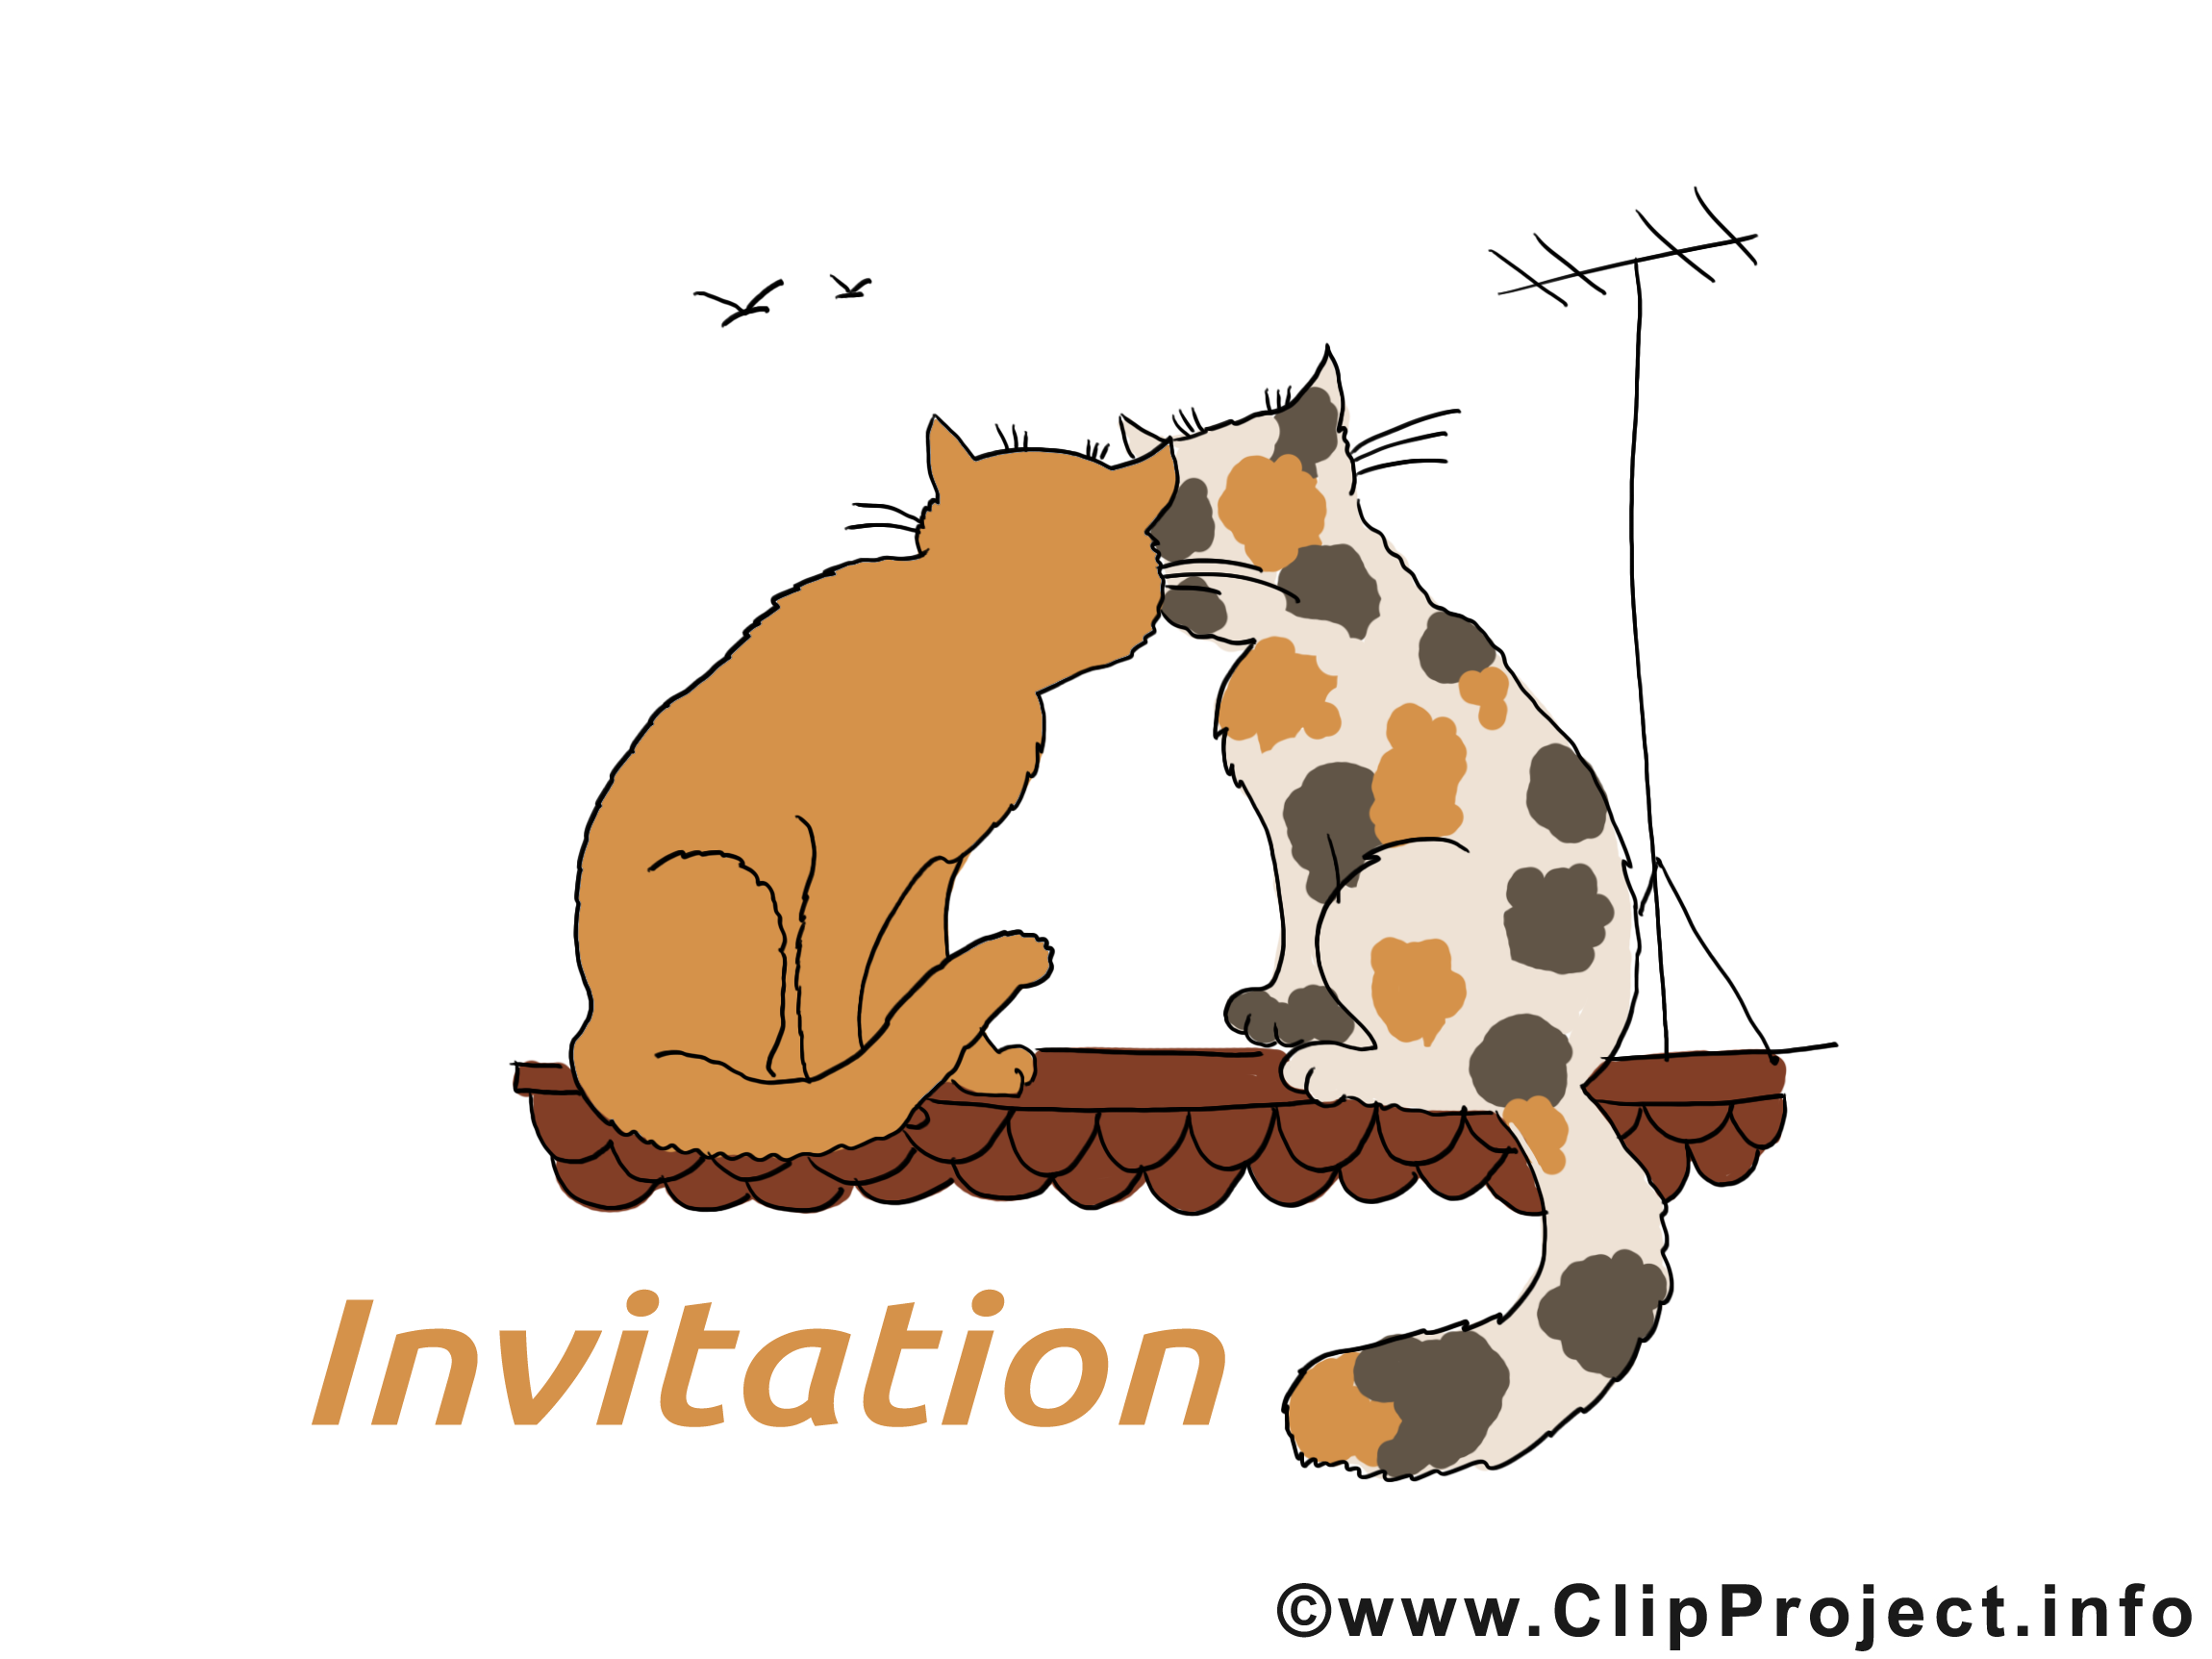 Toit chats dessin à télécharger - Invitation images